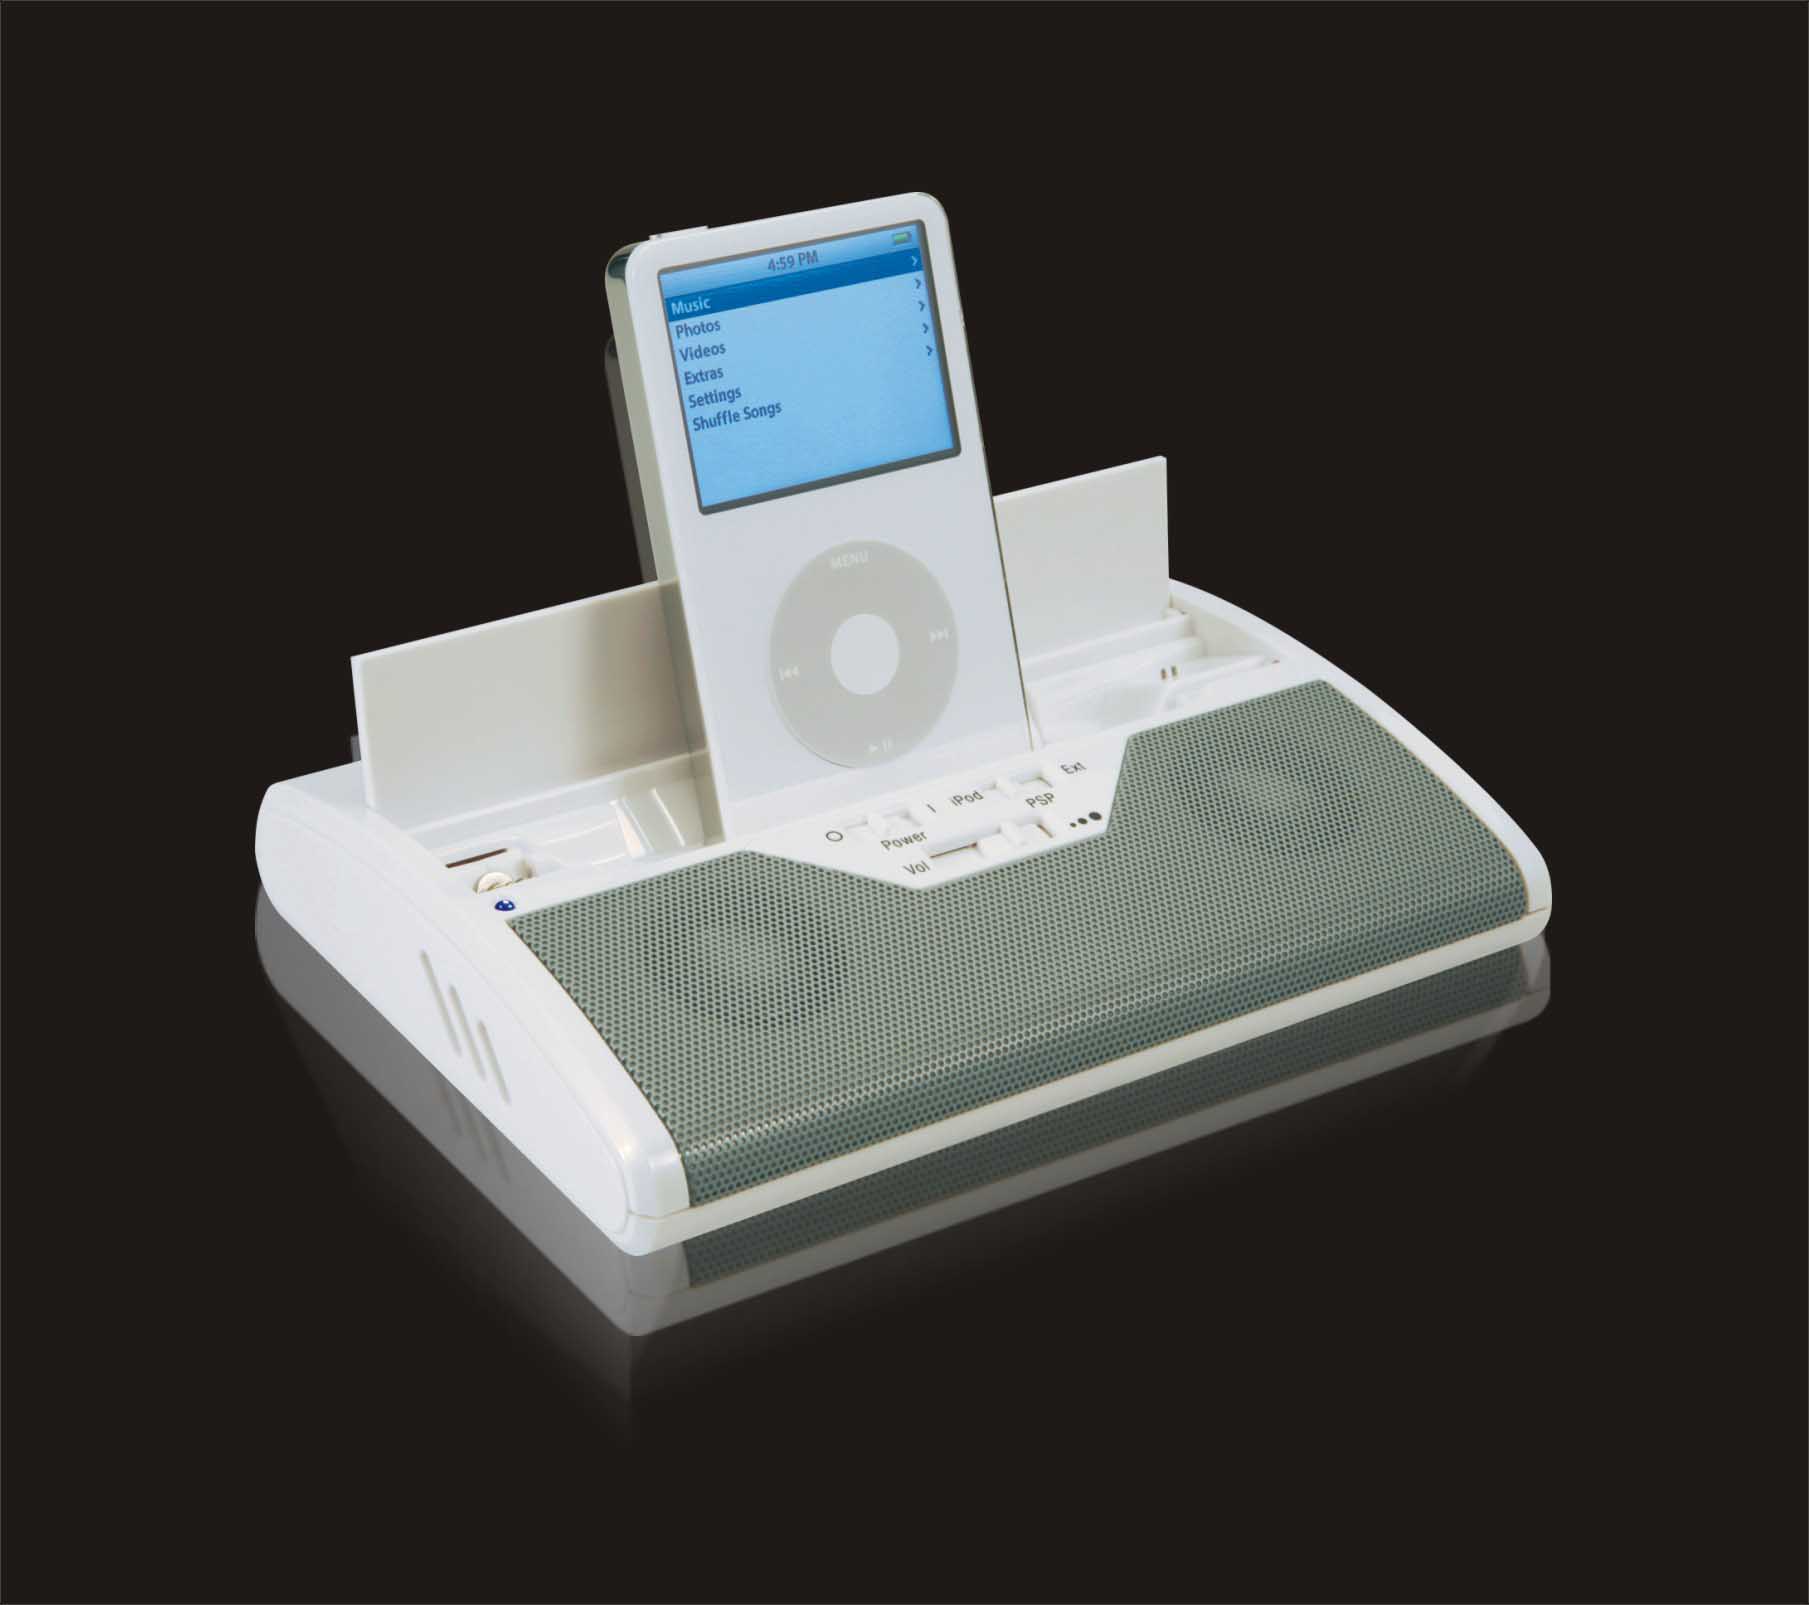  Portable Speaker & Charger For IPod And PSP Console (Портативный спикера & зарядное устройство для IPod и консоли PSP)